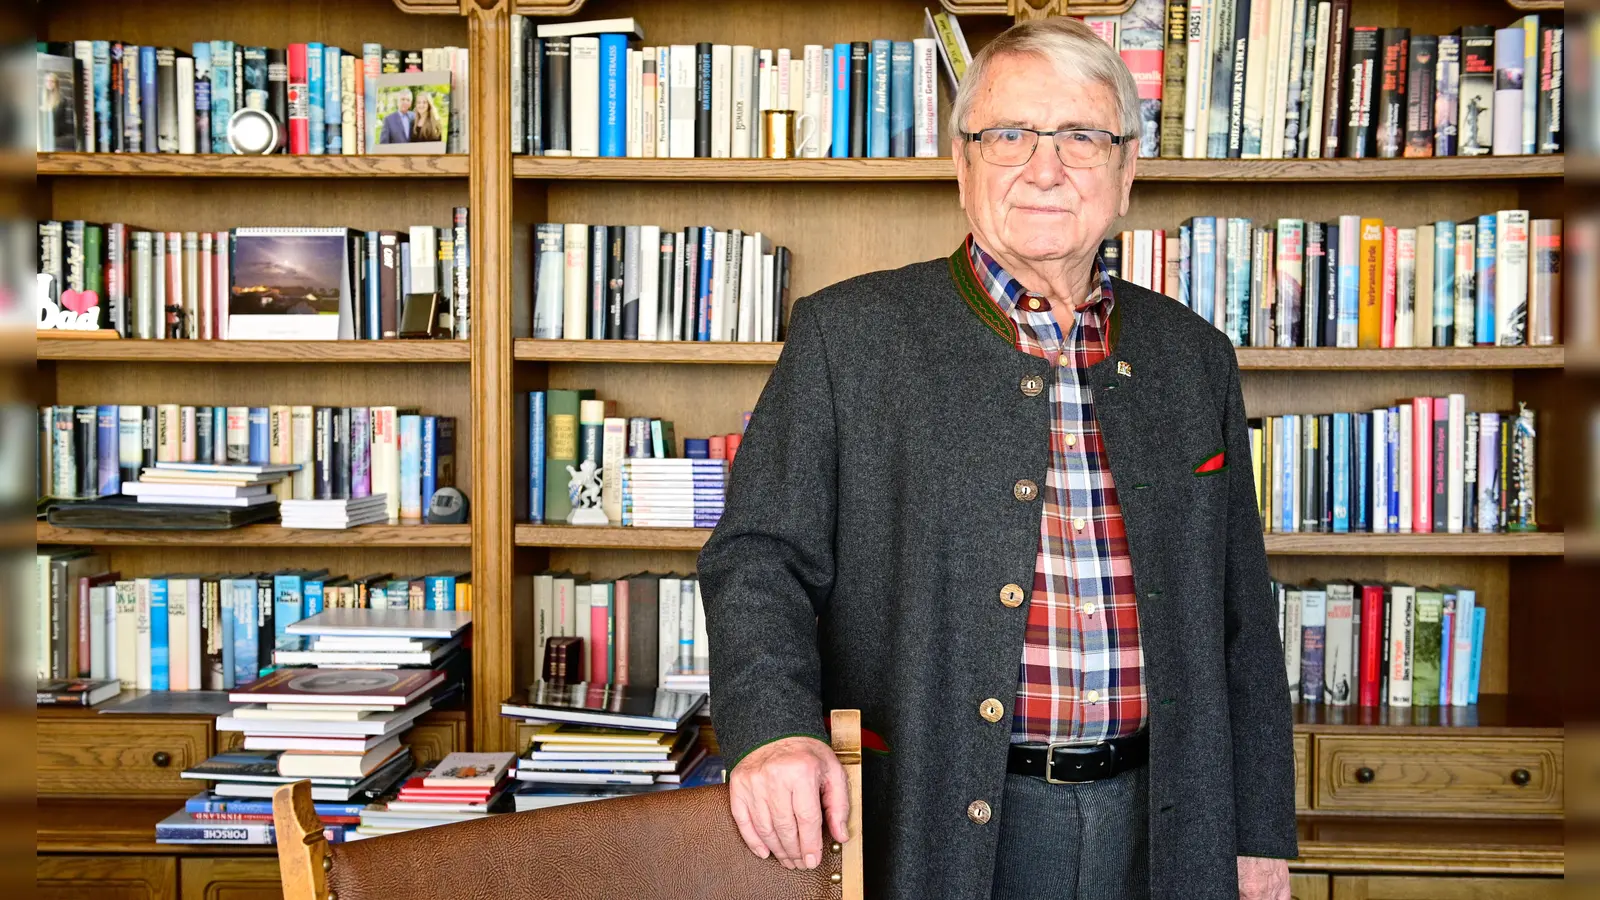 Nach mehr als 40 Jahren Wirken in der Politik engagiert sich Klaus Dieter Breitschwert weiter als Unternehmer und ehrenamtlich. Er ist Ehrenbürger Ansbachs und der französischen Partnerstadt Anglet. (Foto: Jim Albright)